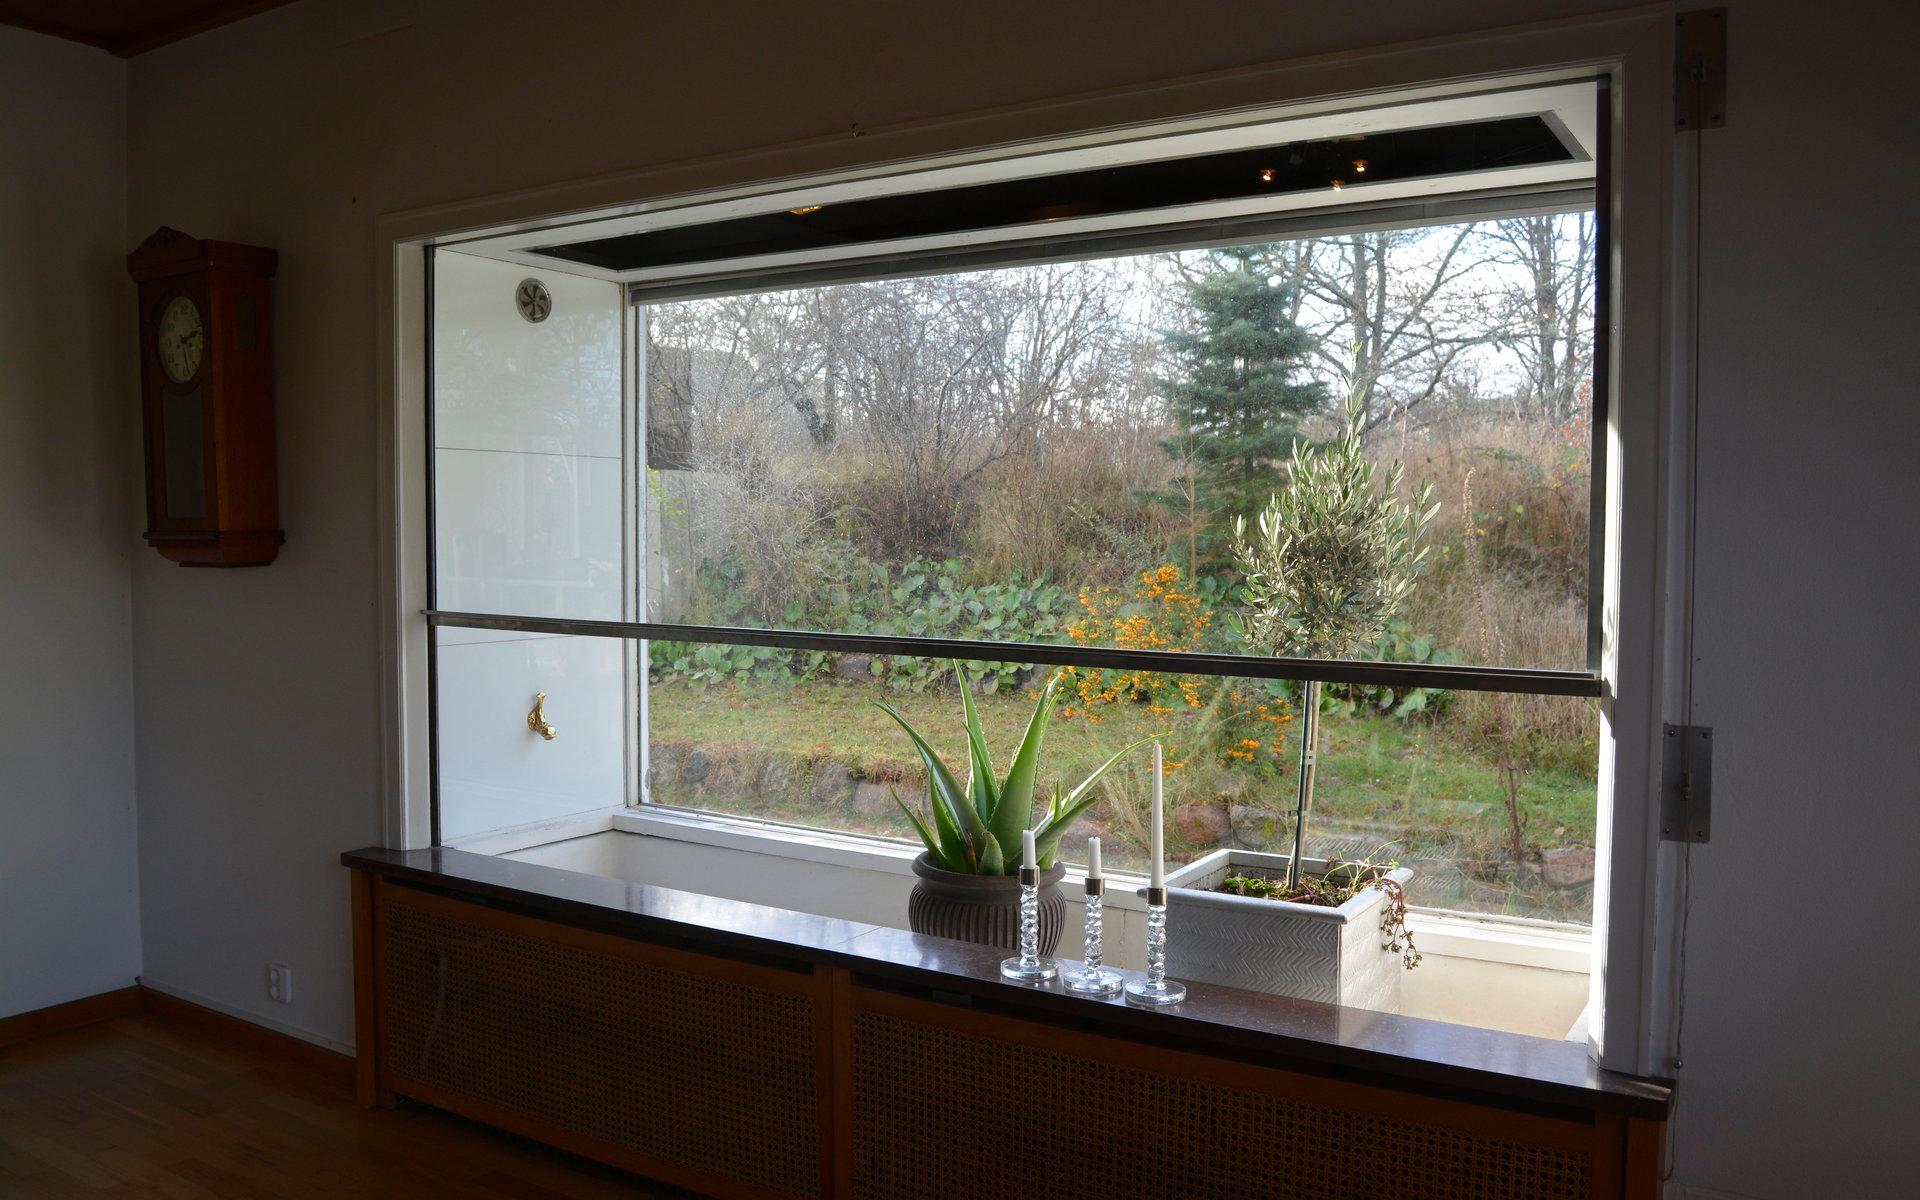 På ena kortsidan finns en inbyggd vinterträdgård, mellan det yttre och inre fönsterglaset.